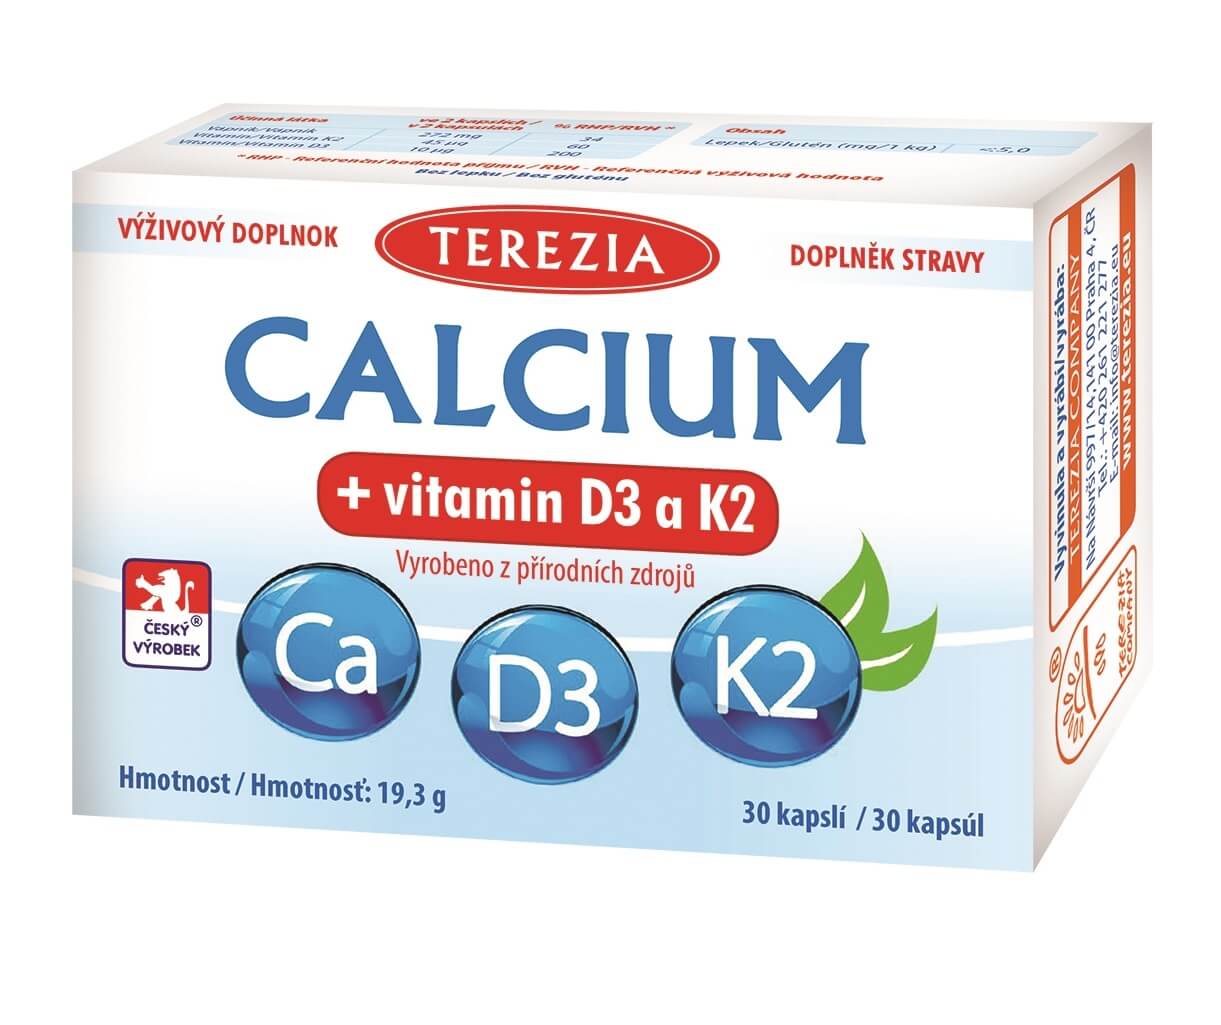 Zobrazit detail výrobku Terezia Company Calcium + vitamin D3 a K2 30 kapslí + 2 měsíce na vrácení zboží